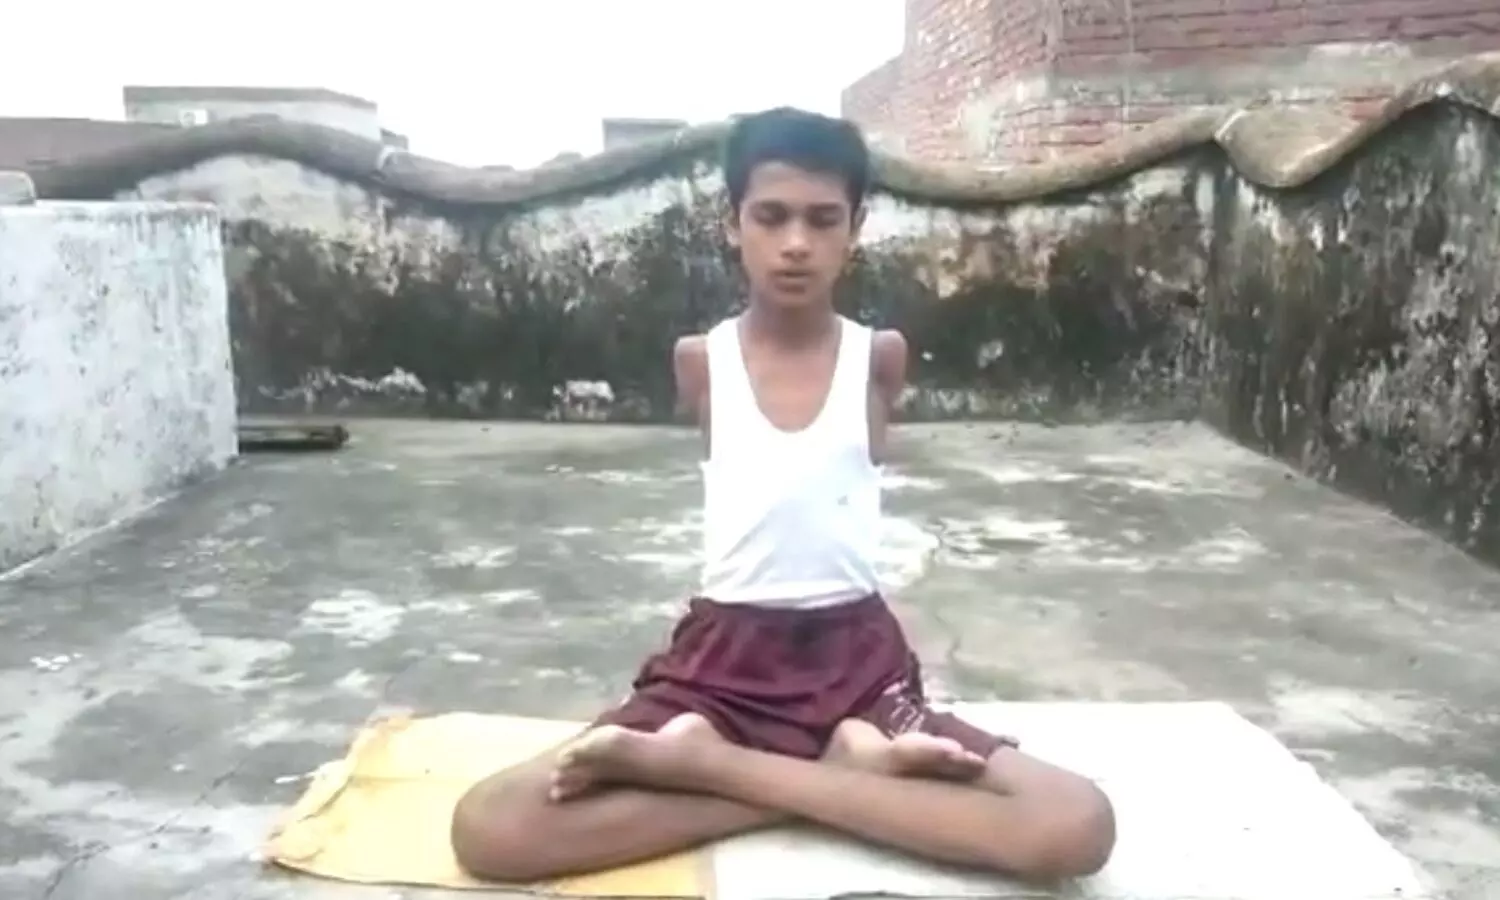 Kannauj Yoga Day News: दिव्यांग किशोर ने समझायी योग की महत्ता, Yoga Video Viral